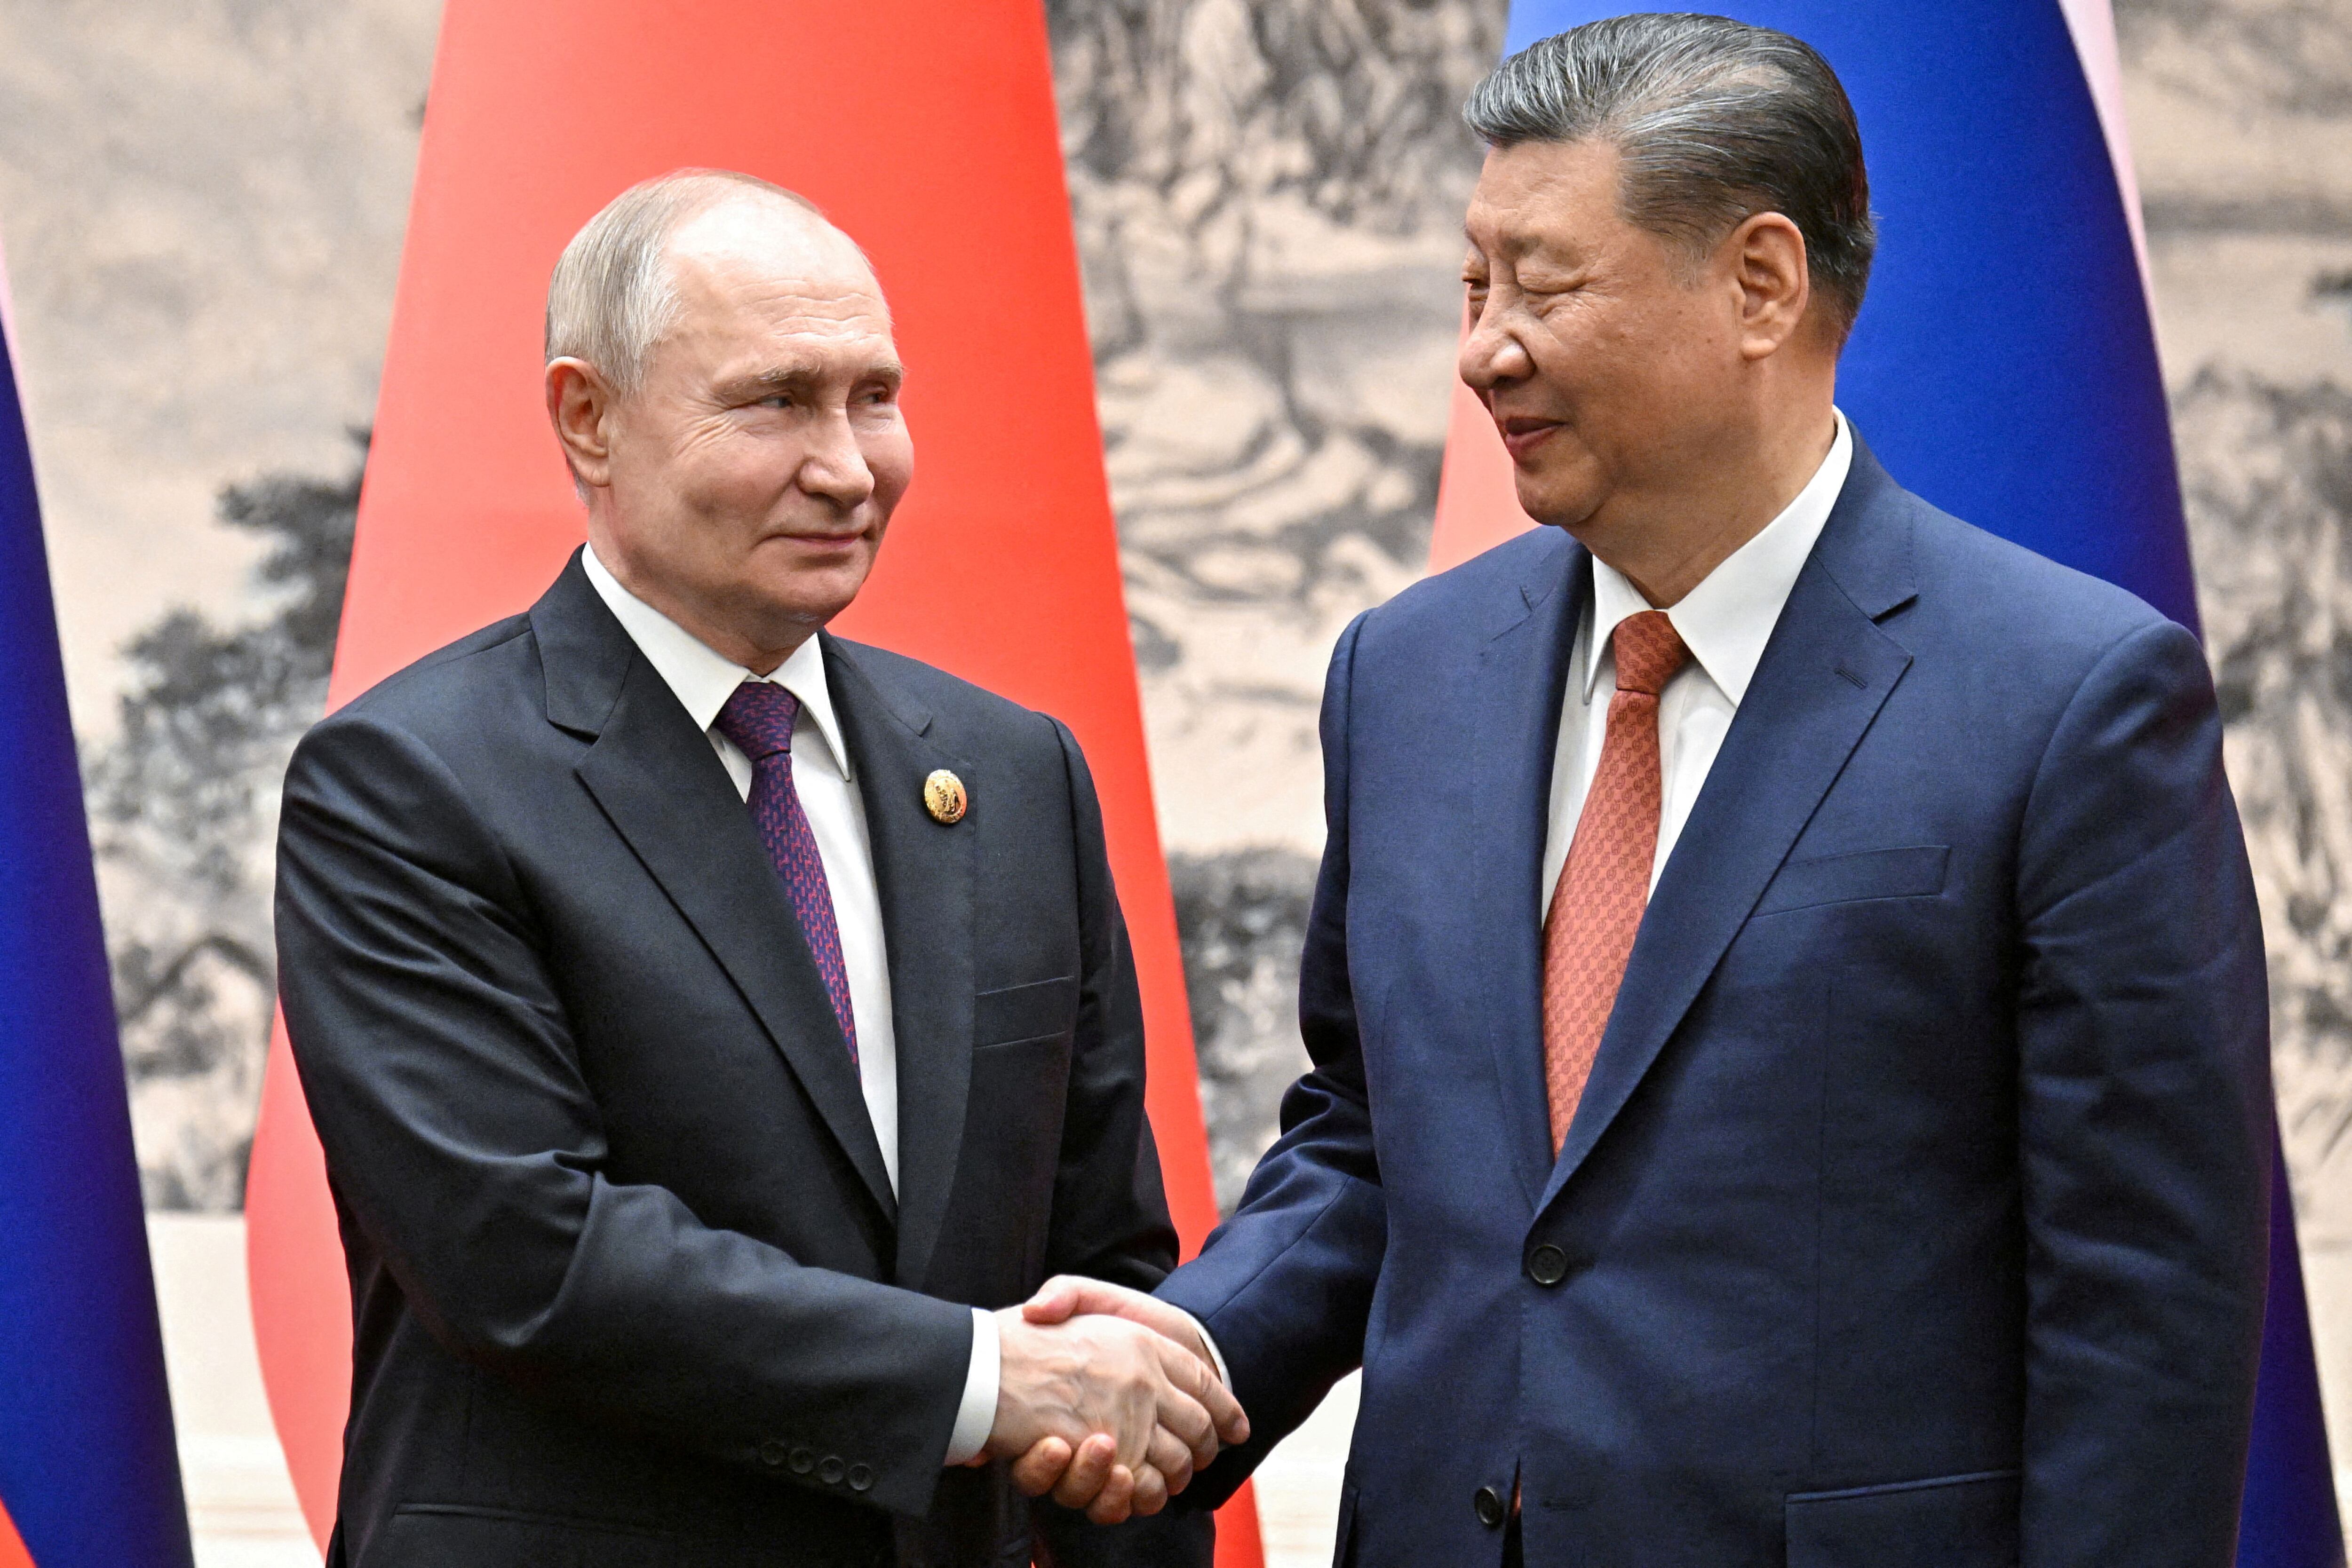 El juego de Xi Jinping: más sutil que Vladimir Putin pero igual de perturbador 